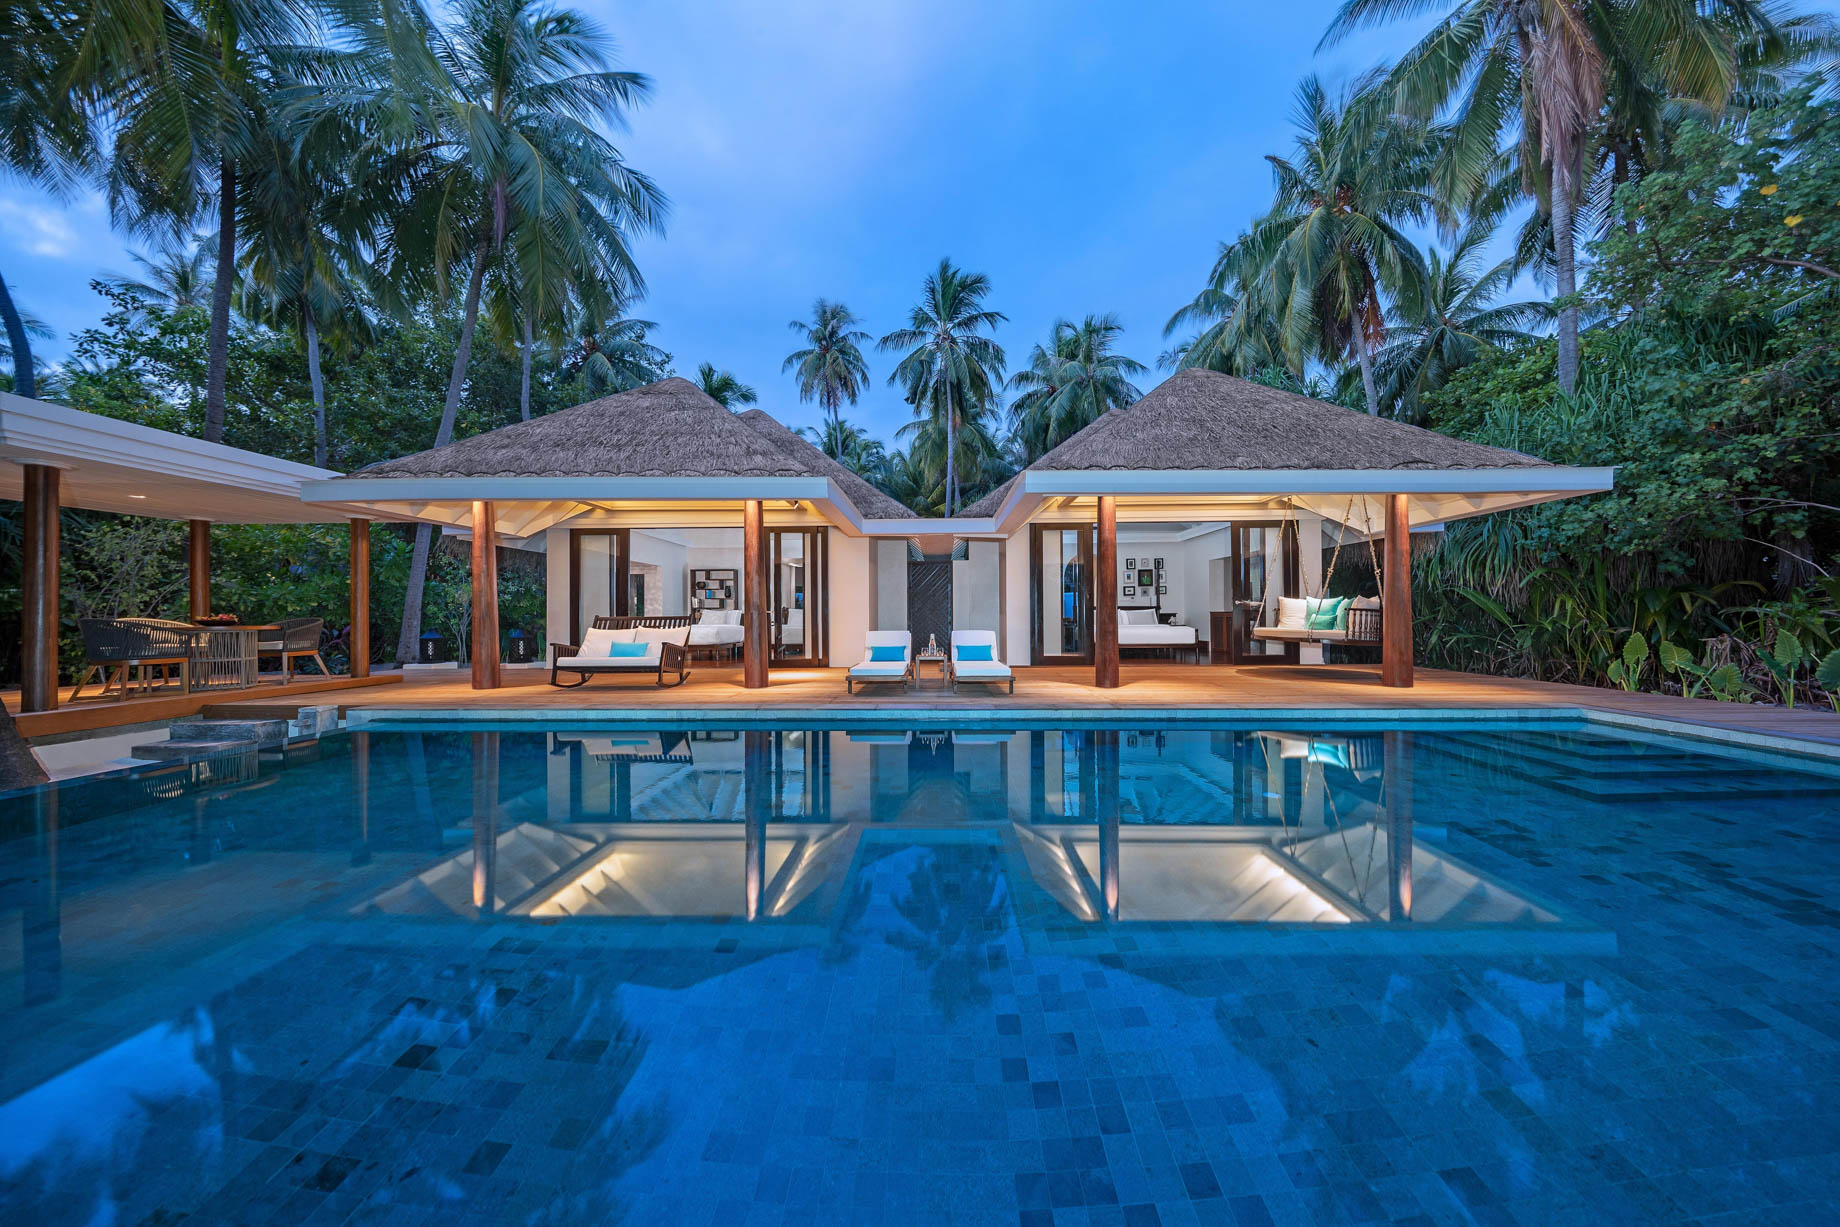 Anantara Kihavah Maldives Villas Resort – Baa Atoll, Maldives – Two Bedroom Beach Pool Residence Exterior Night View